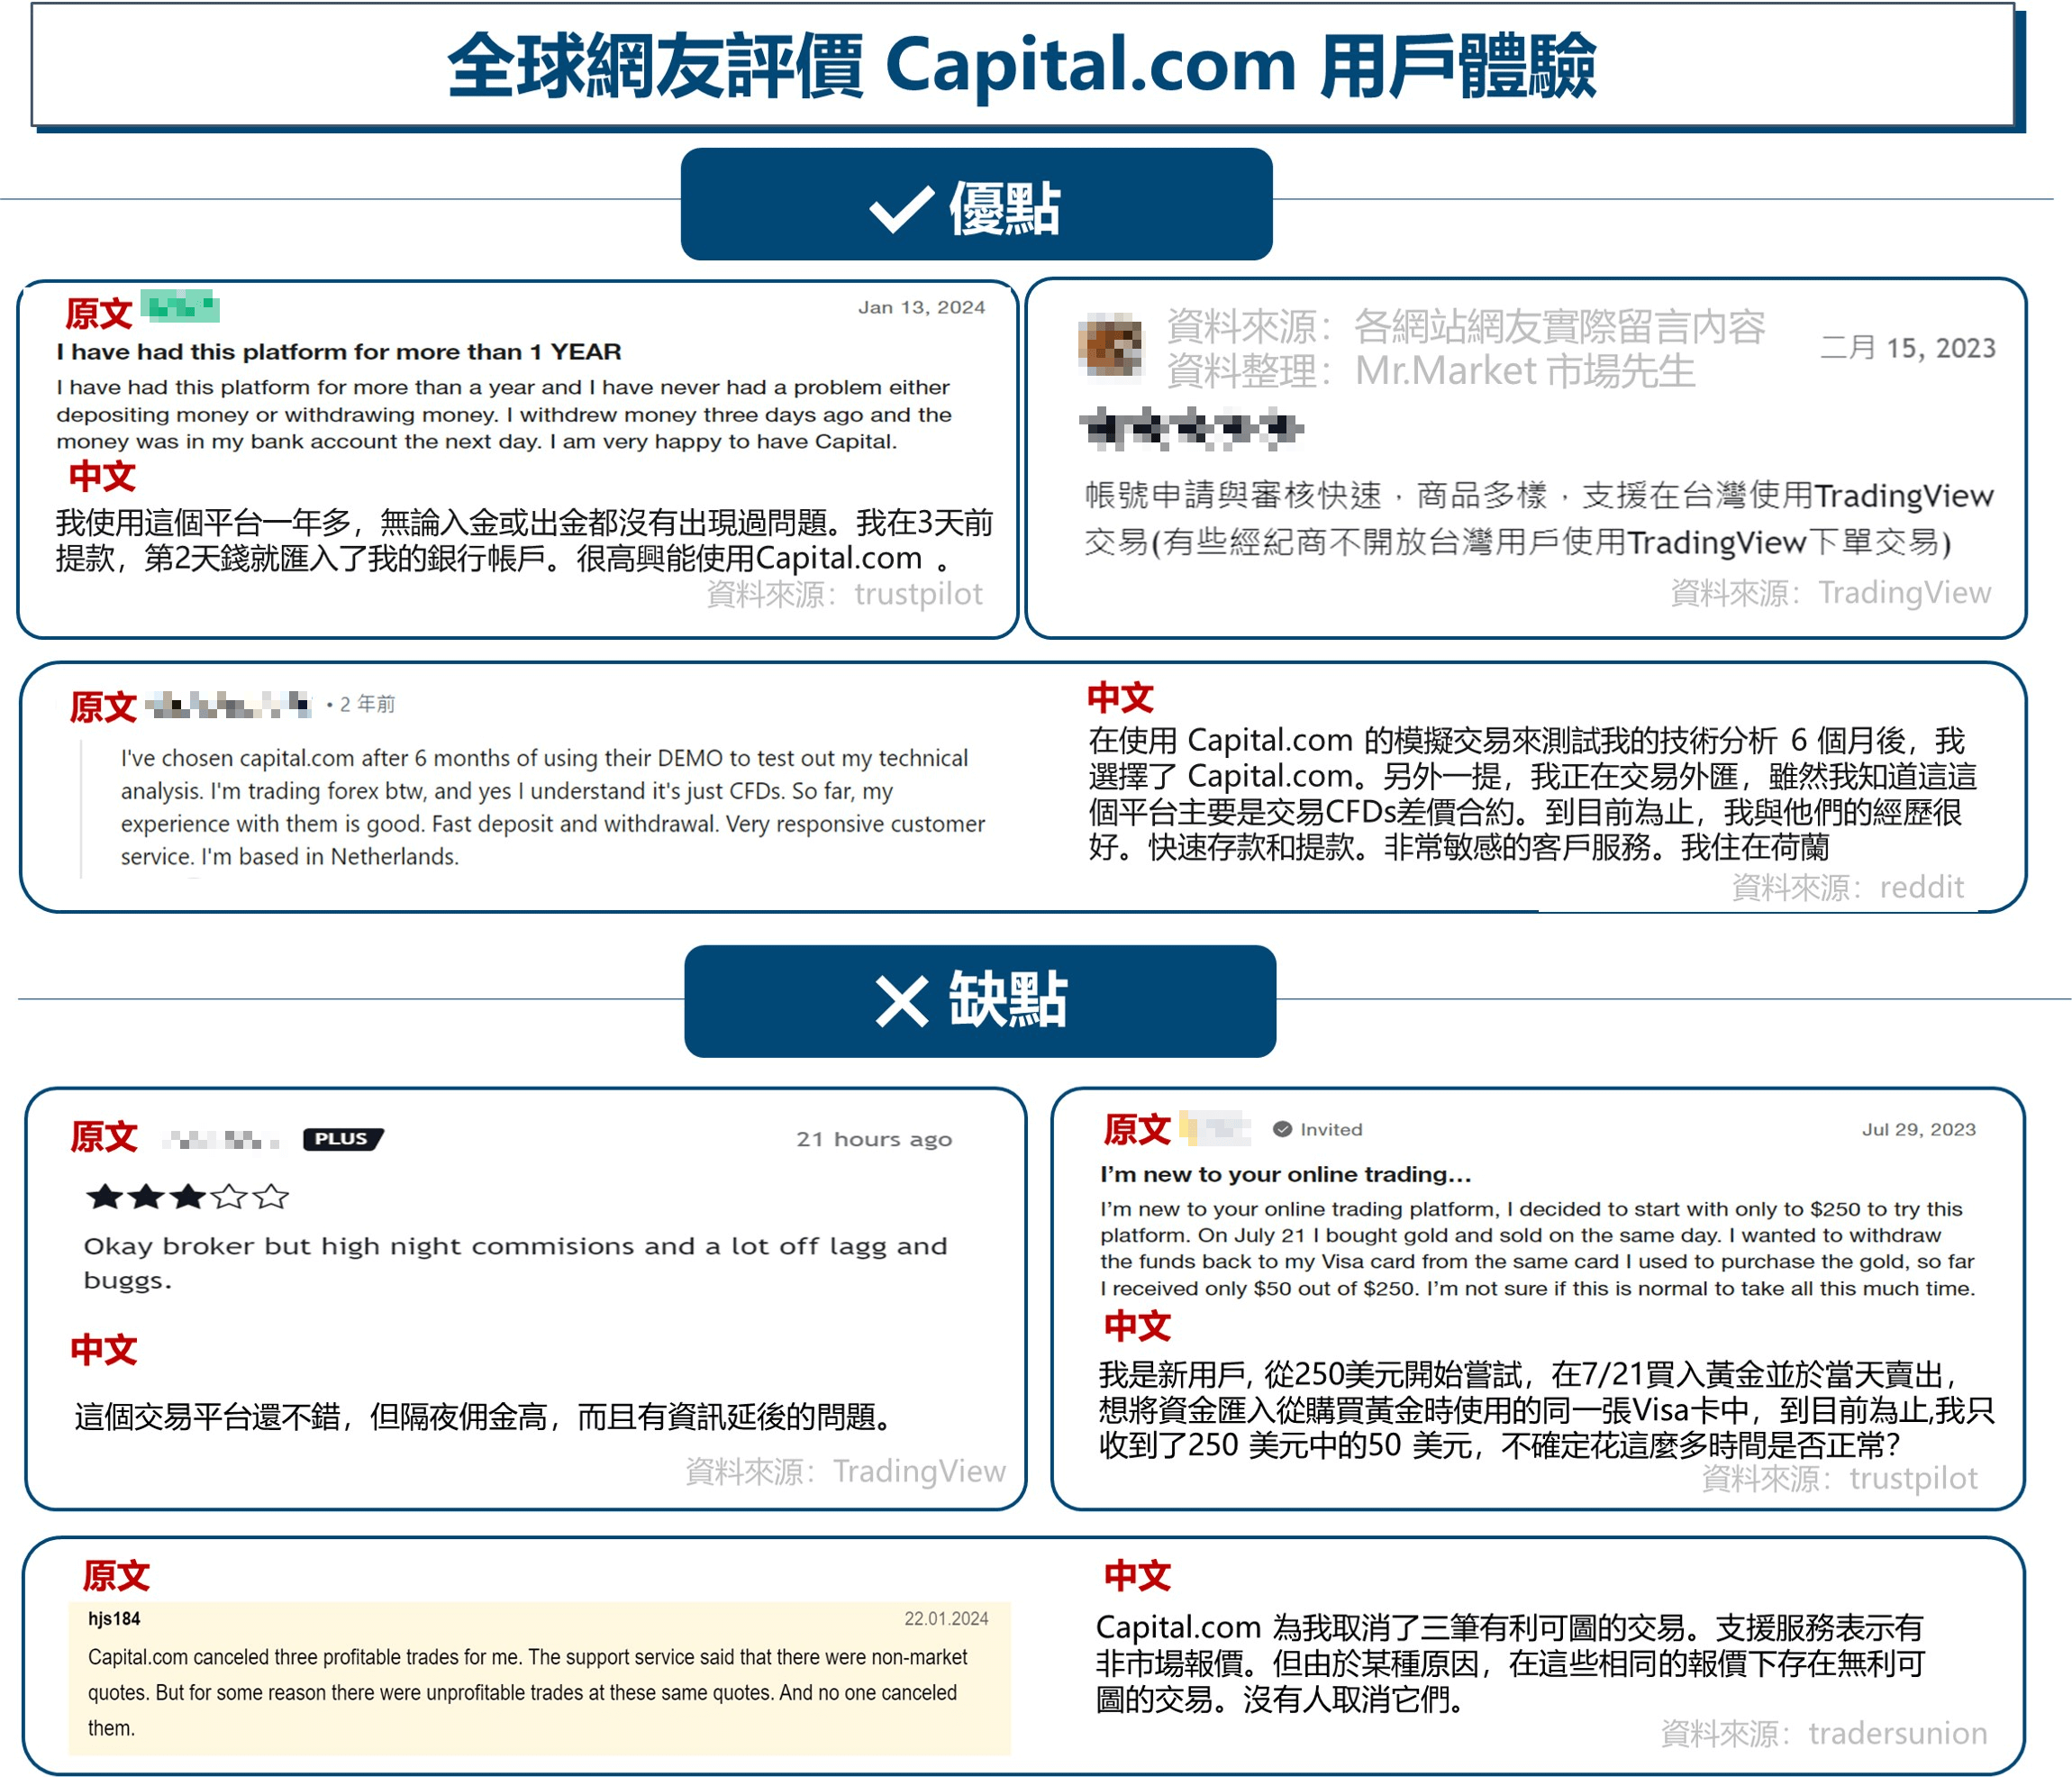 全球網友評價Capital.com 用戶體驗優缺點